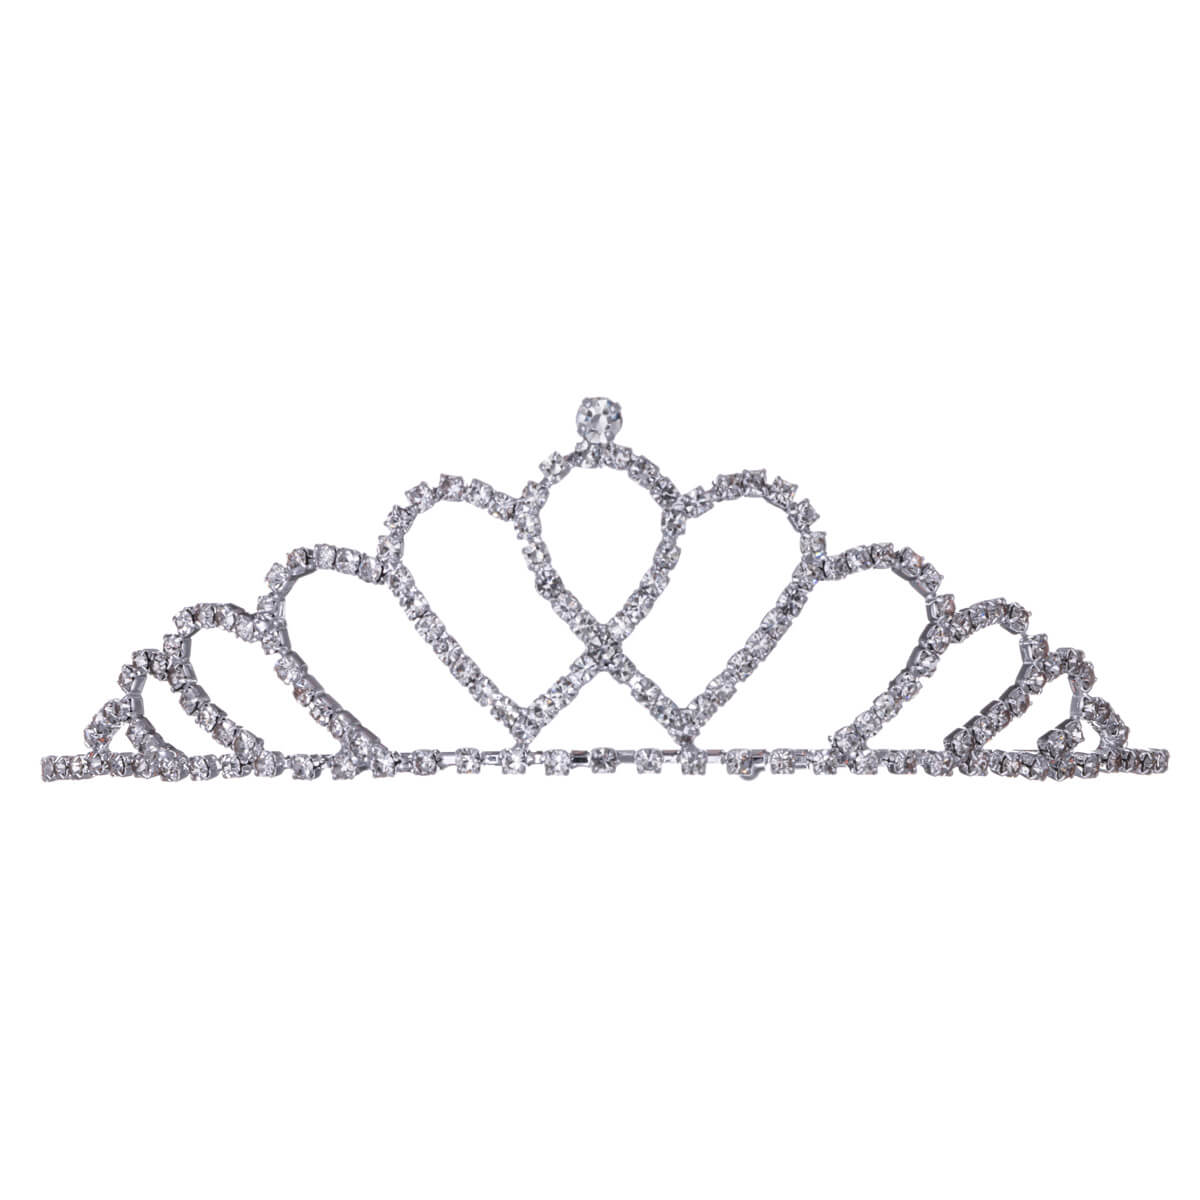 Enchanting party tiara tiara hairband